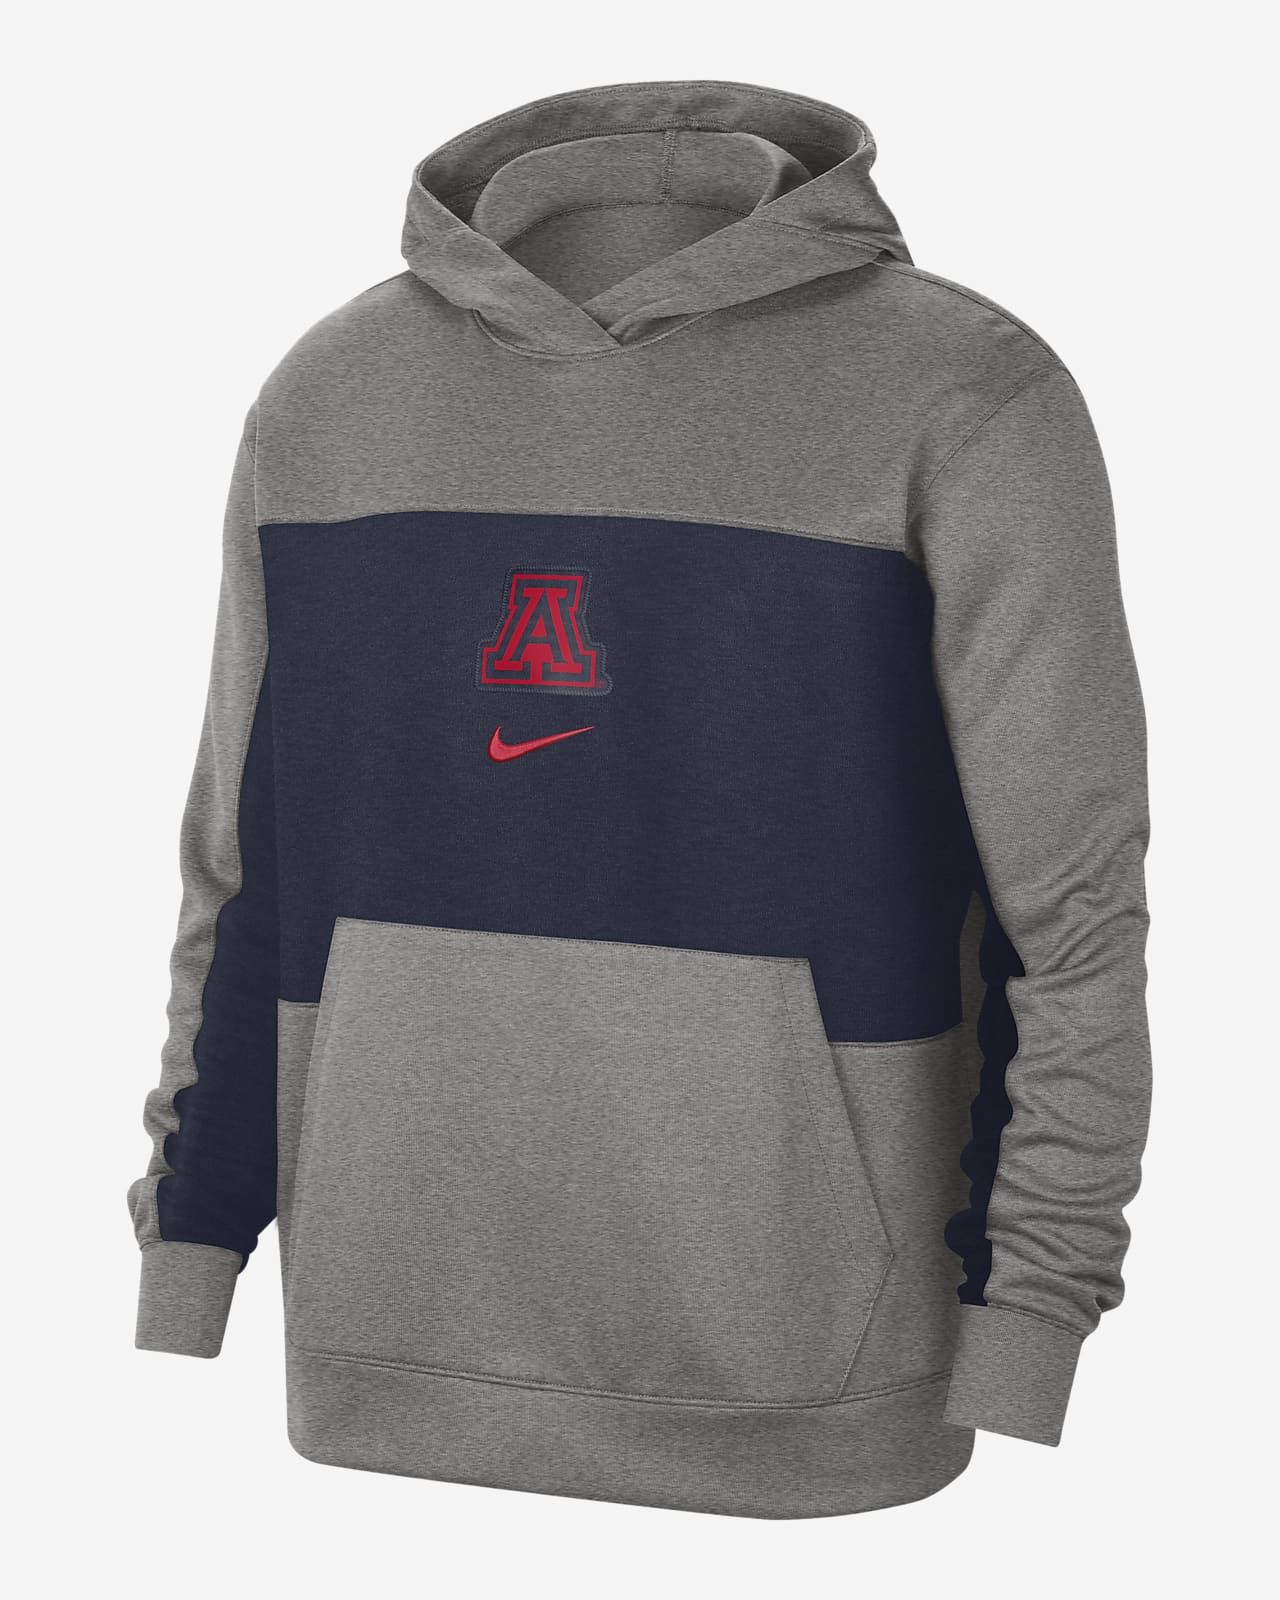 Nike Spotlight (Arizona) Men's Pullover 